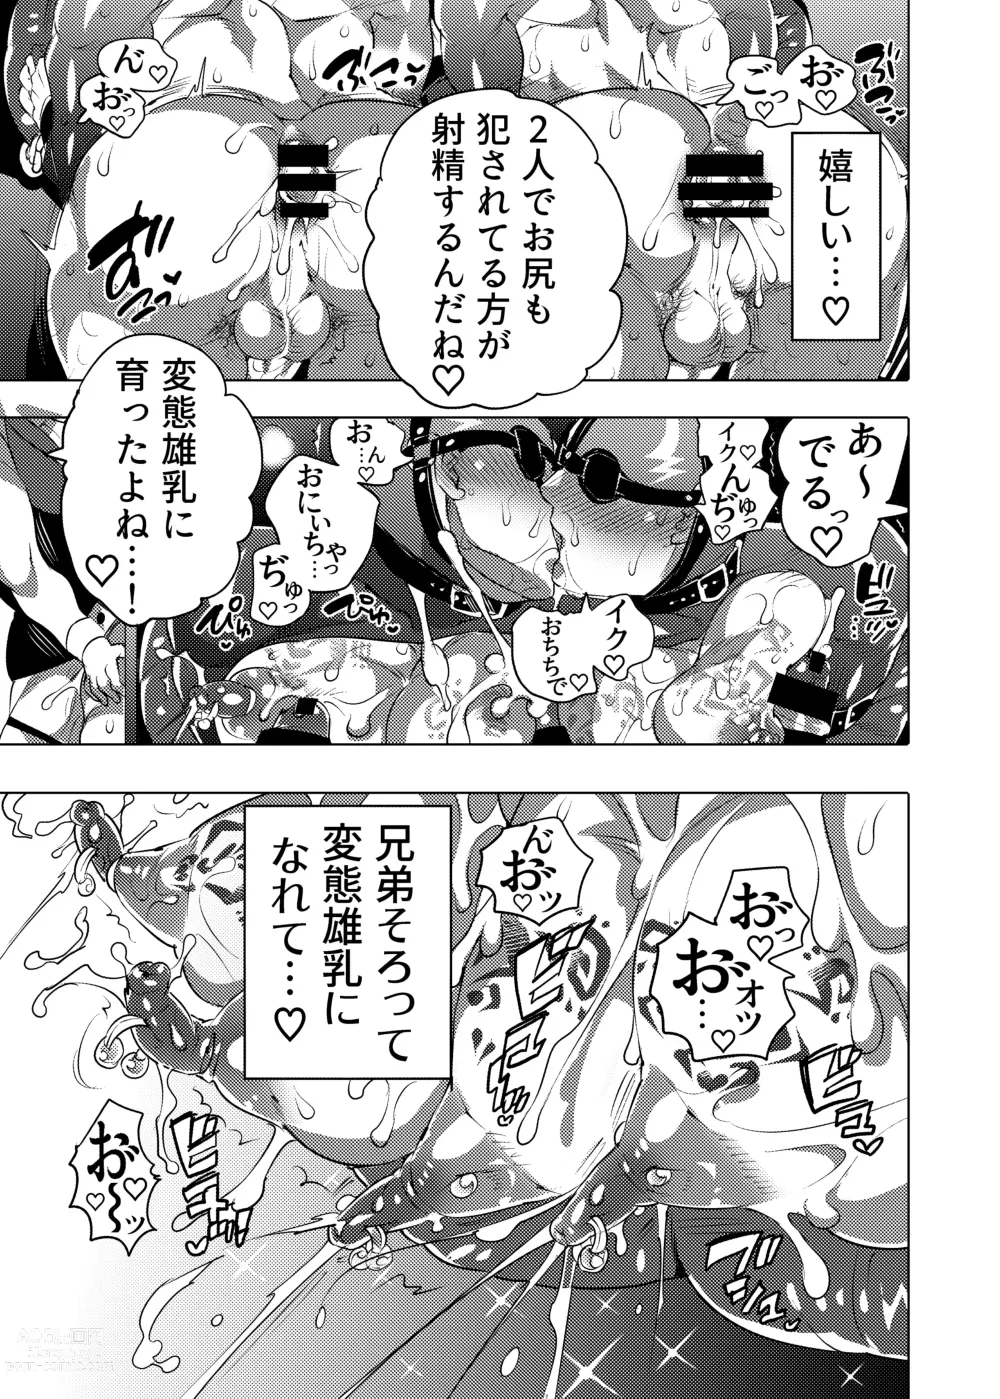 Page 59 of doujinshi Ochichi Hinpyoukai